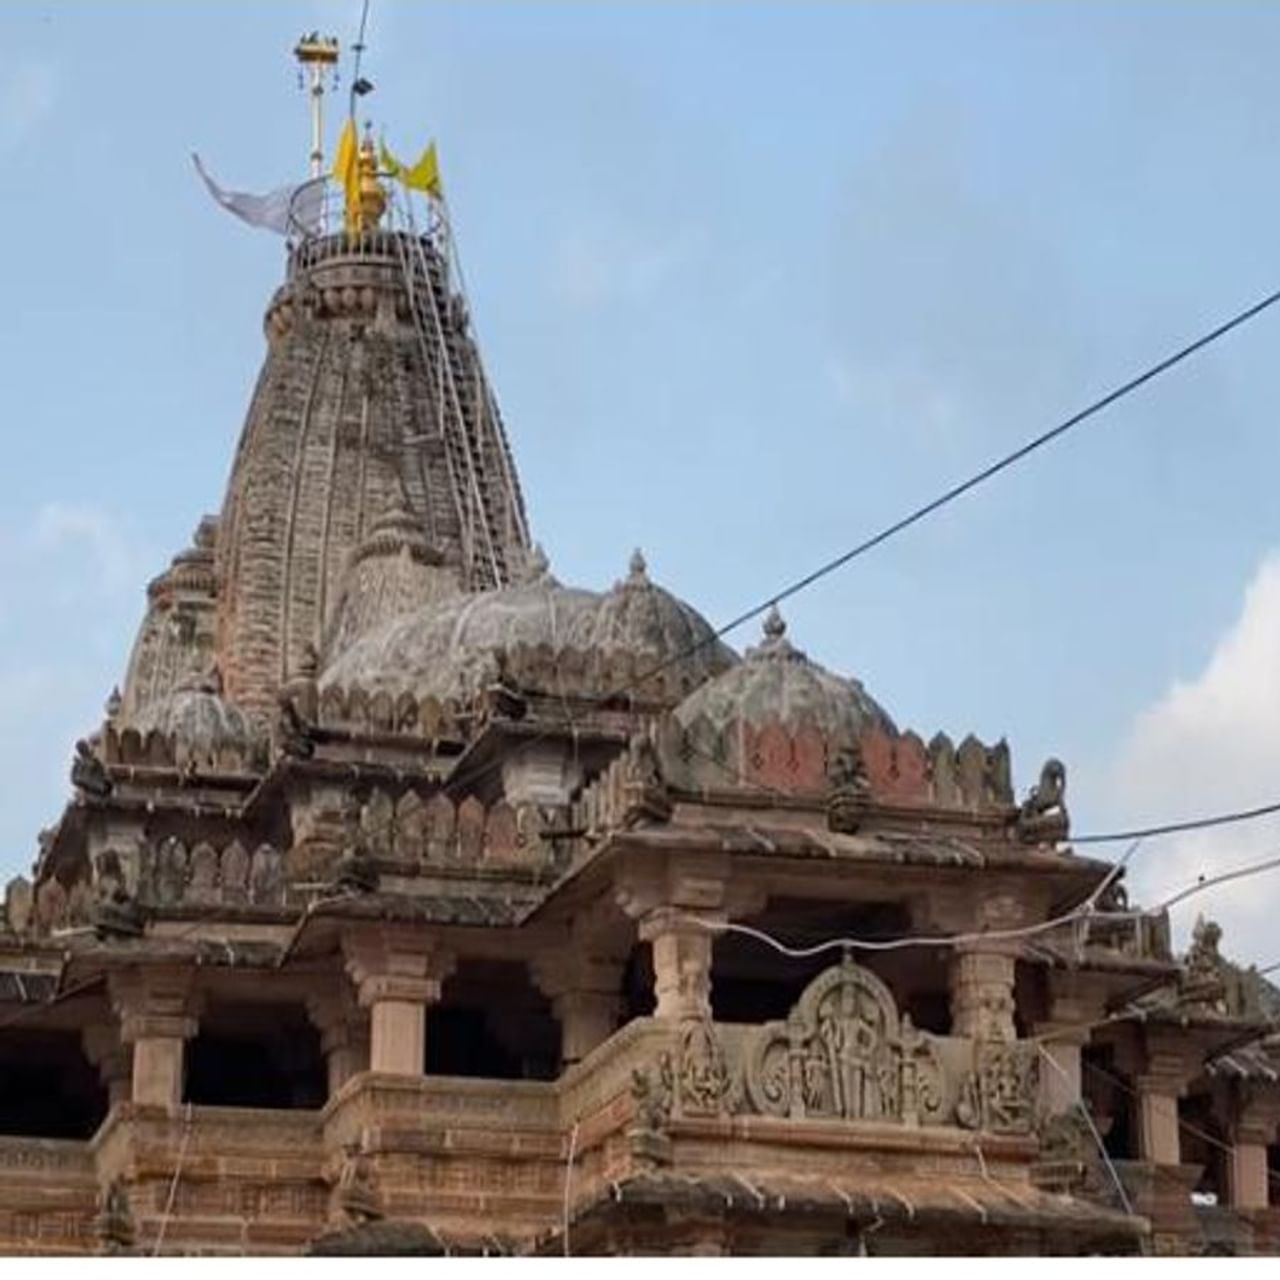 અરવલ્લી (Aravalli) જિલ્લામાં શામળાજી (Shamlaji Tample) માં આવેલ ભગવાન વિષ્ણુનુ મંદિર ખૂબ જ પ્રસિદ્ધ છે. અહી મોટી સંખ્યામાં ભક્તો દર્શનાર્થે આવે છે. આદીવાસી સમાજને શામળીયા ભગવાન પર ખૂબ જ શ્રદ્ધા છે. પૌરાણિક મંદિરનો વિકાસ પણ રાજ્ય સરકાર દ્વારા પ્રવાસ સ્થળને લઈ કરવામાં આવ્યો છે. મંદિરમાં પણ ટ્ર્સ્ટ દ્વારા ભગવાનનો રુઆબ વધુને વધુ સુંદર લાગે એ માટેના પ્રયાસો કરવામાં આવે છે. મંદિરના ગર્ભગૃહના દરવાજાઓને સોનાથી મઢવામાં આવ્યા છે.